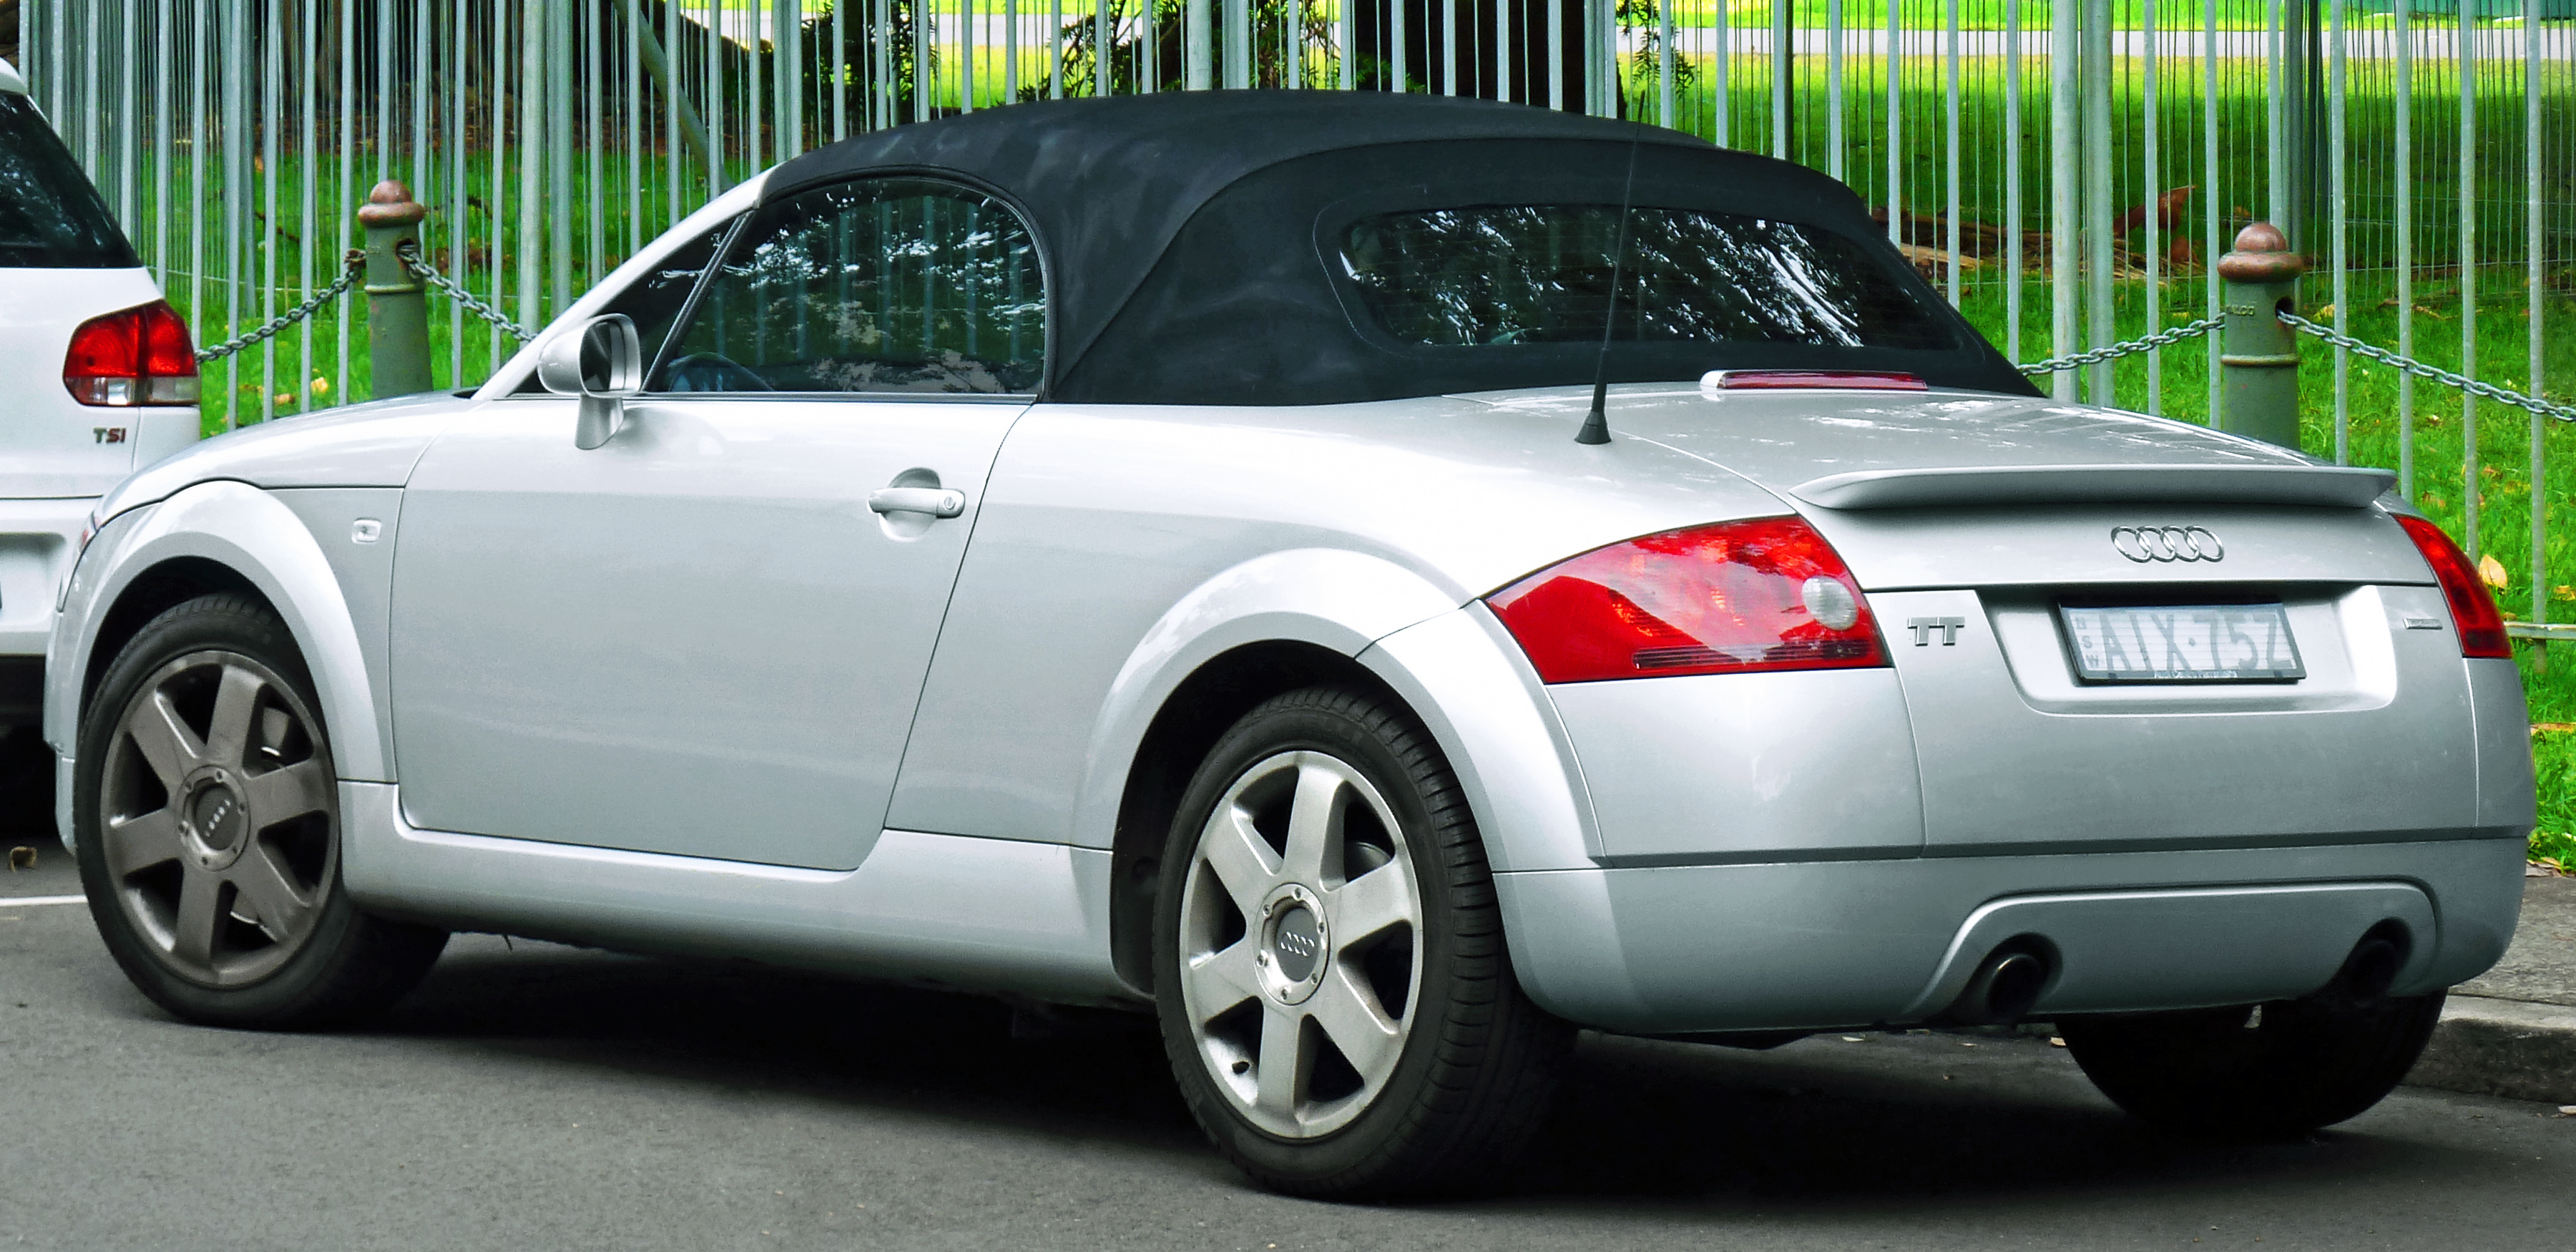 File:Audi A4 B7 Cabriolet Dashboard.jpg - Wikipedia